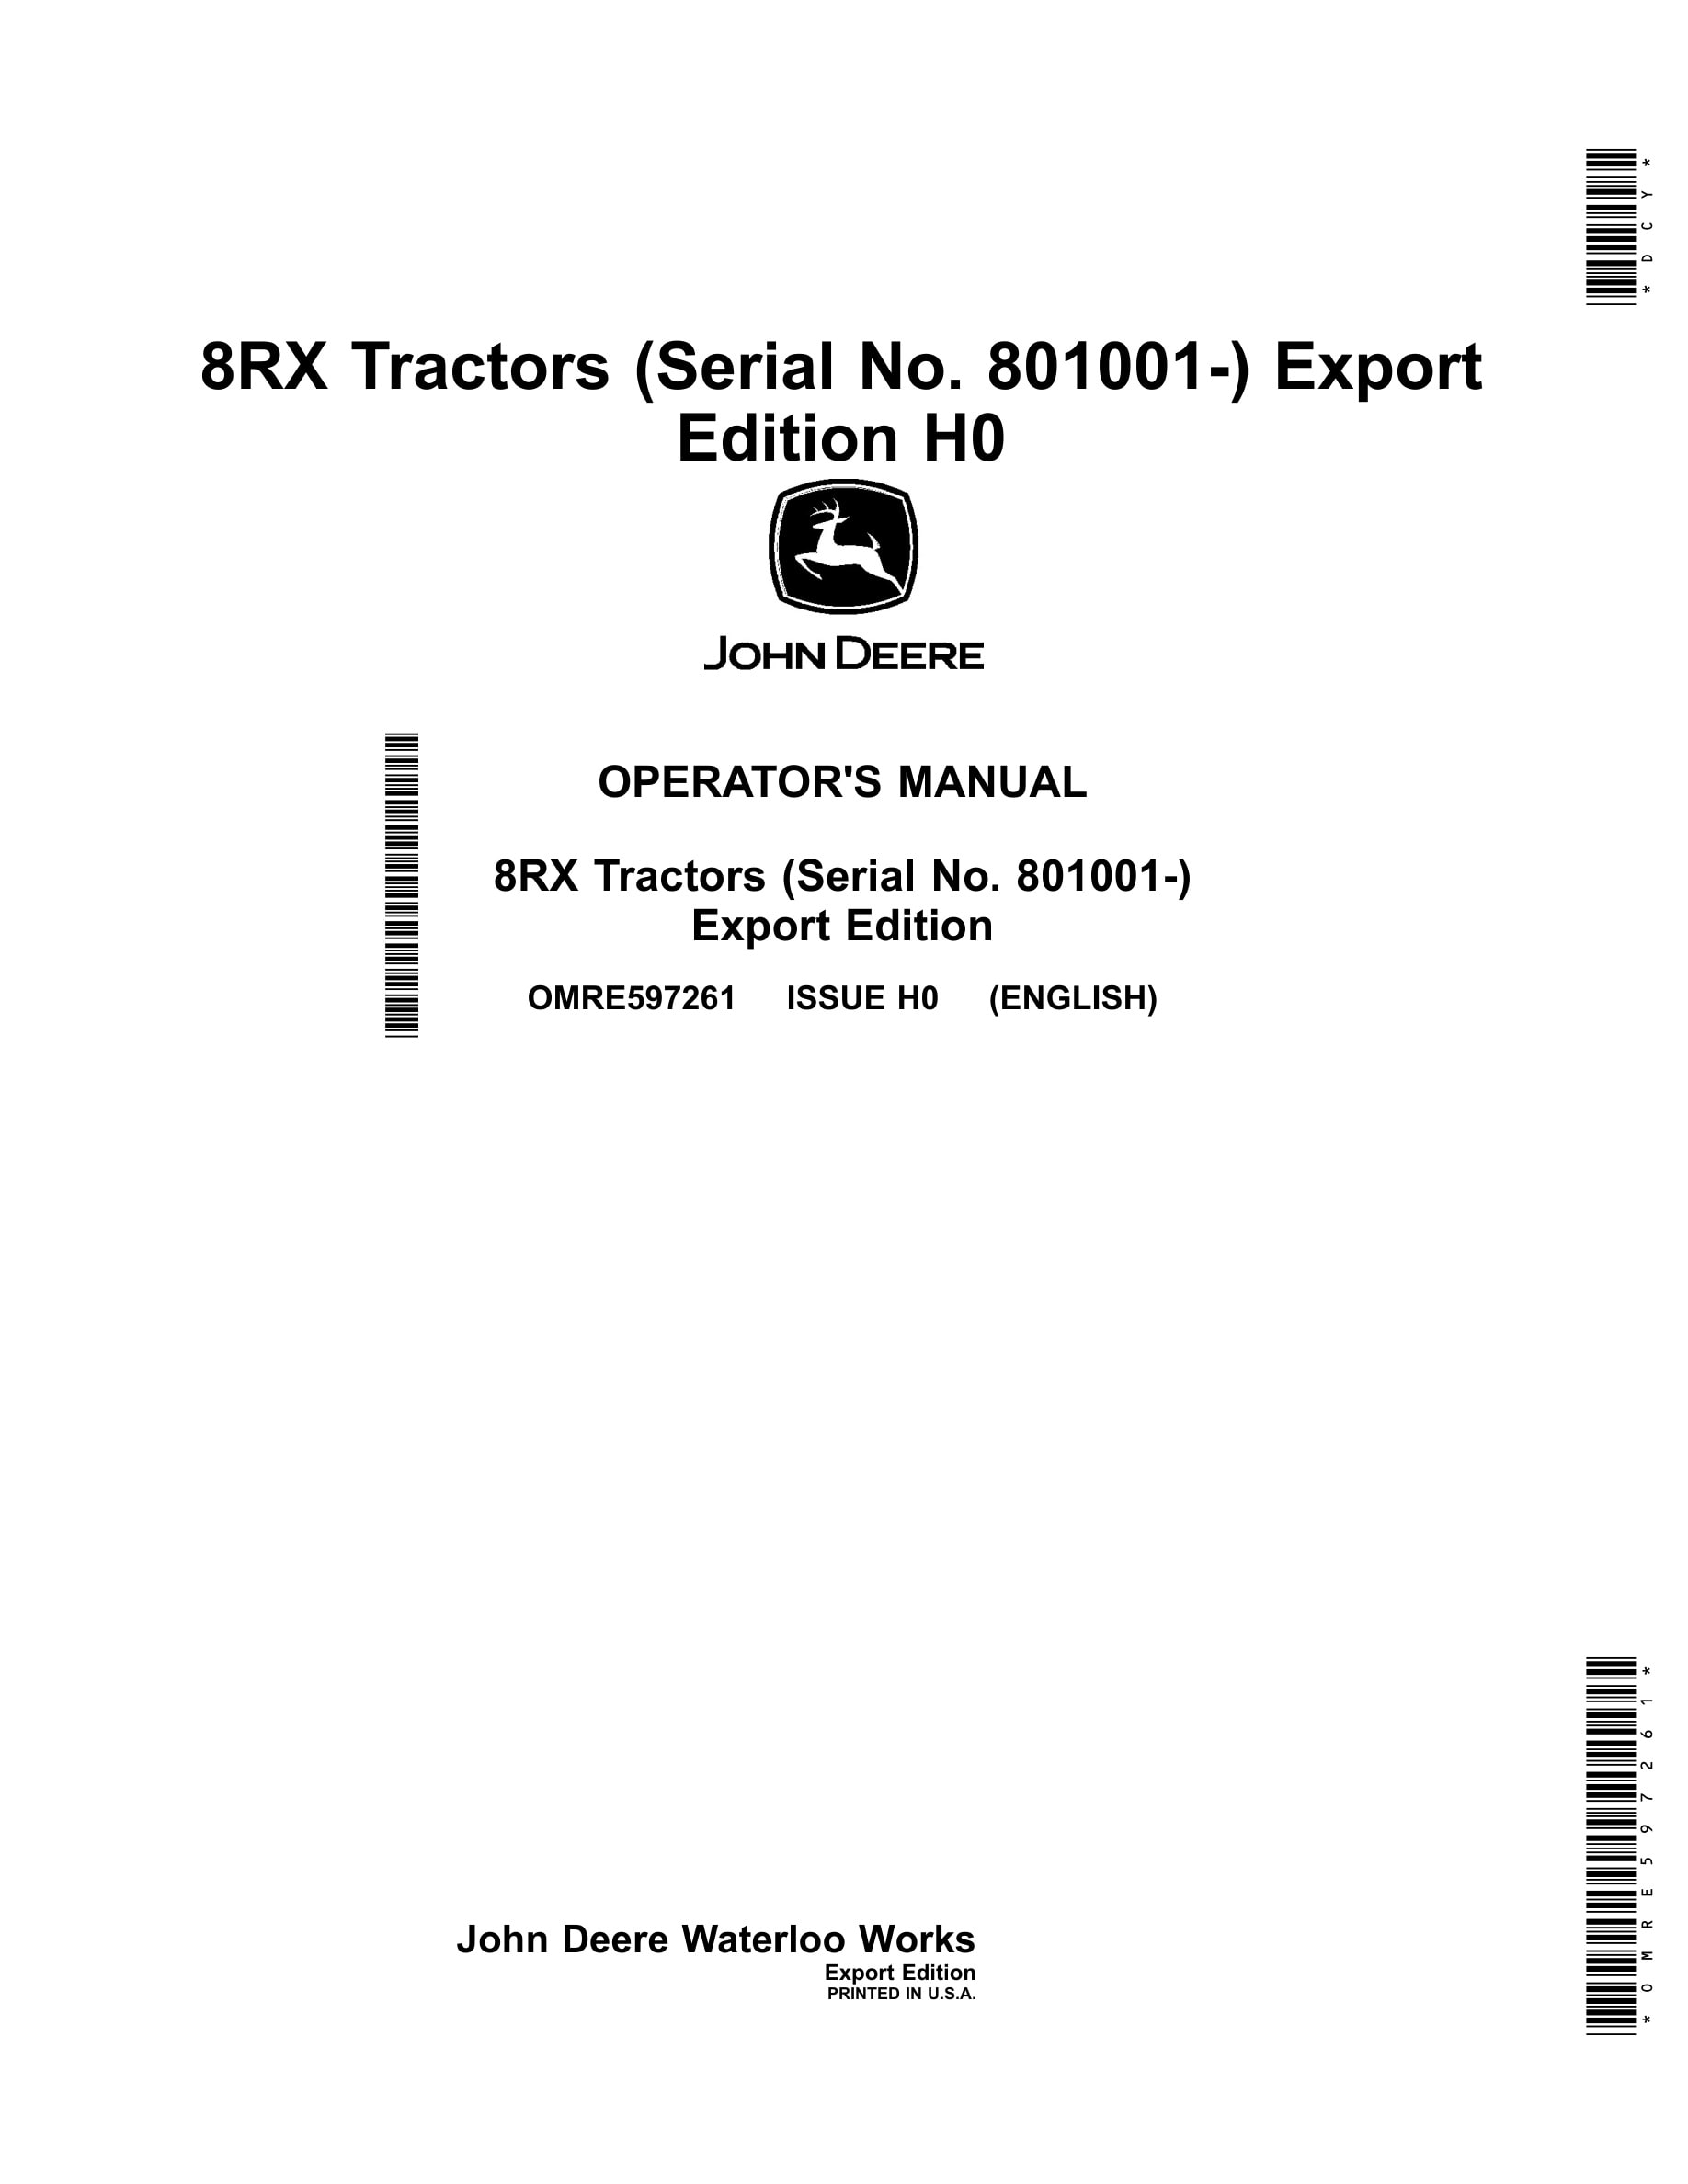 John Deere 8rx Tractors Operator Manuals OMRE597261-1